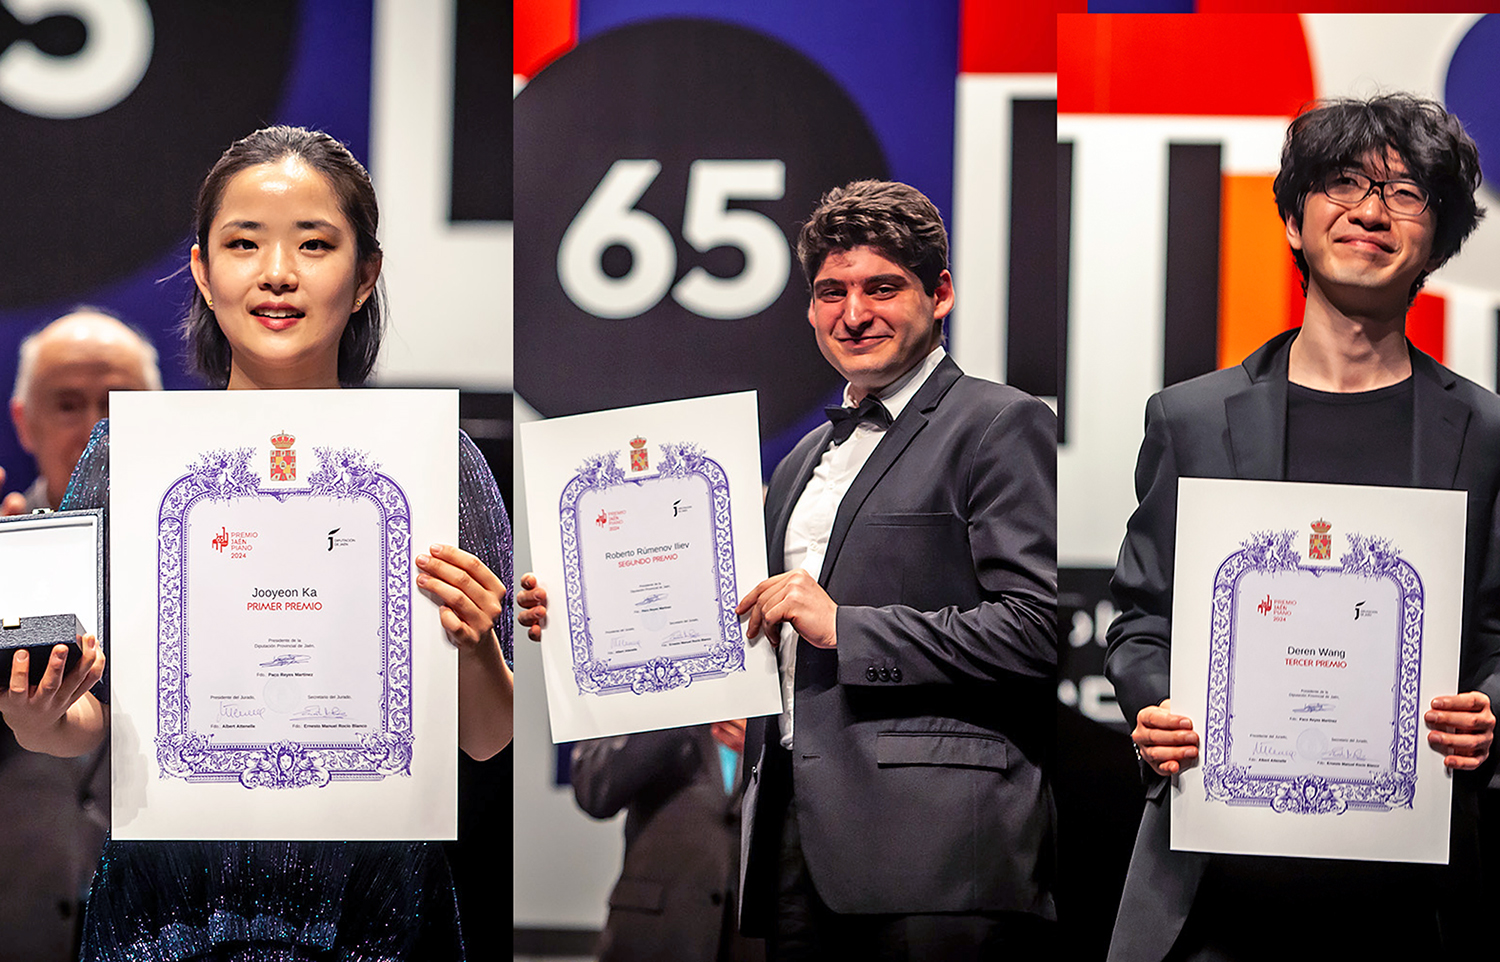 La intérprete coreana Jooyeon Ka se lleva los 8.000 € del primer premio de la 65ª edición del Premio ‘Jaén’ de Piano de Diputación